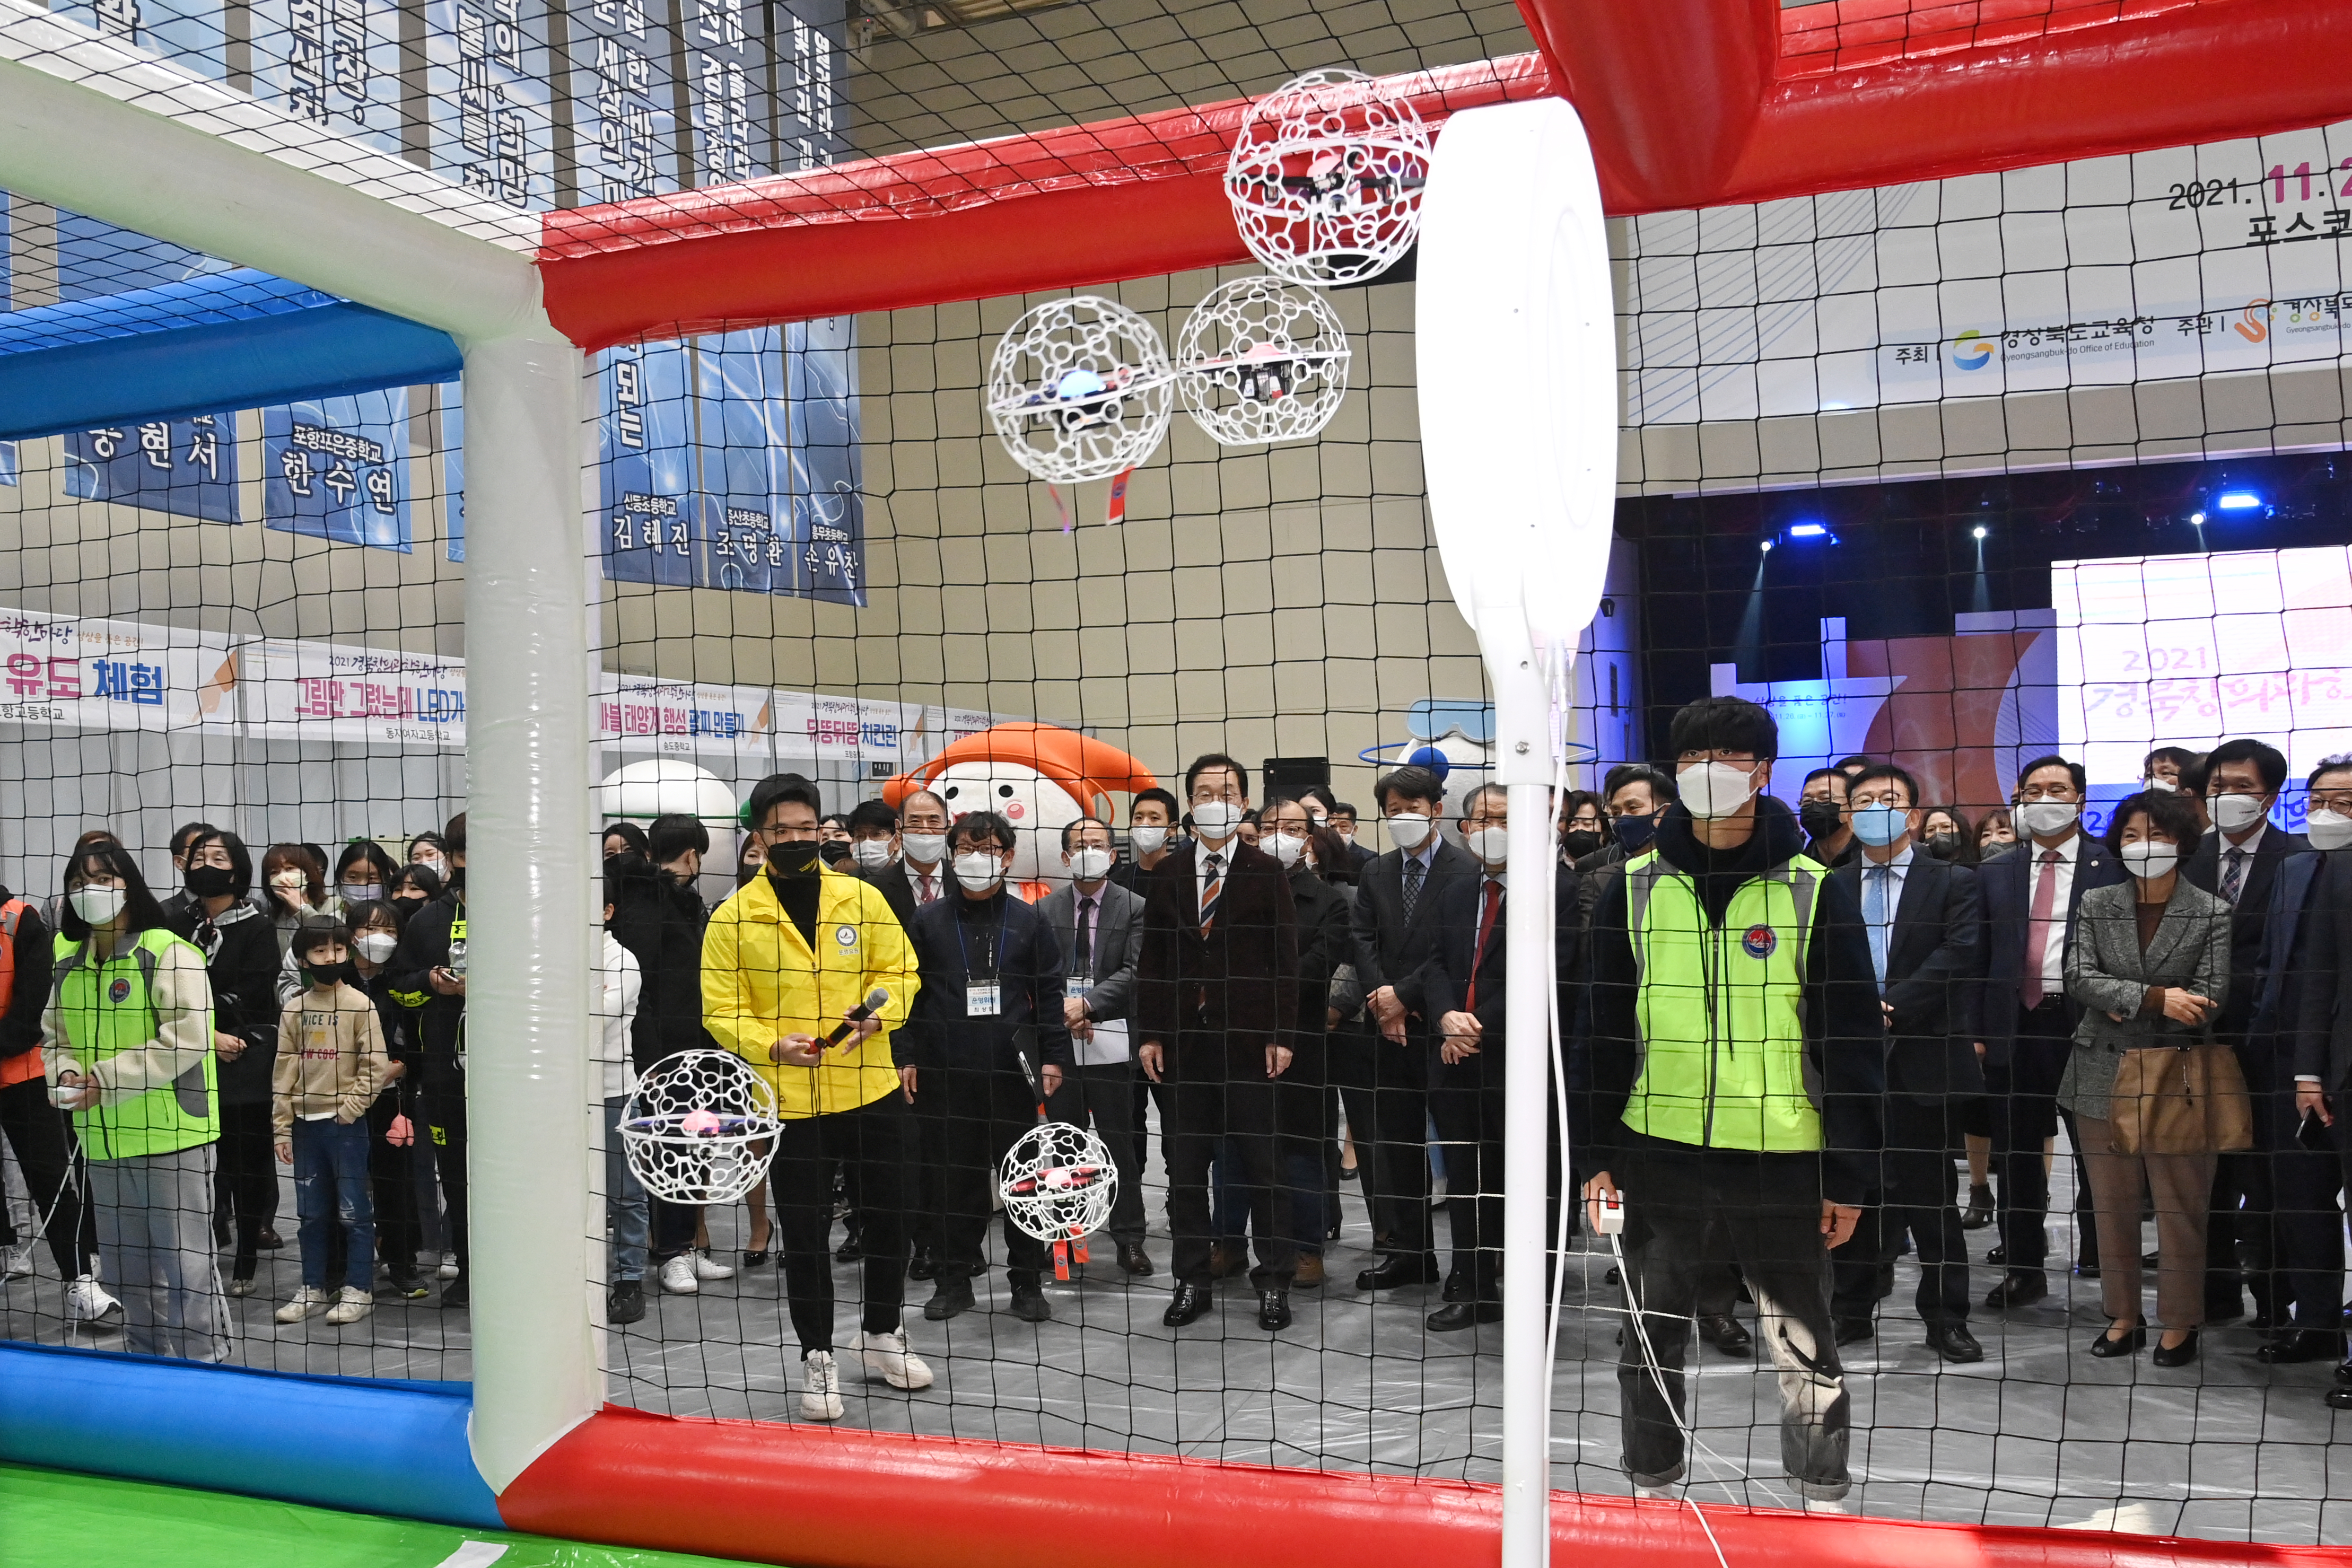 2021 경북창의과학한마당에서 드론축구경기를 관람하는 경상북도교육감과 내빈들을 촬영 한 사진  확대 보기